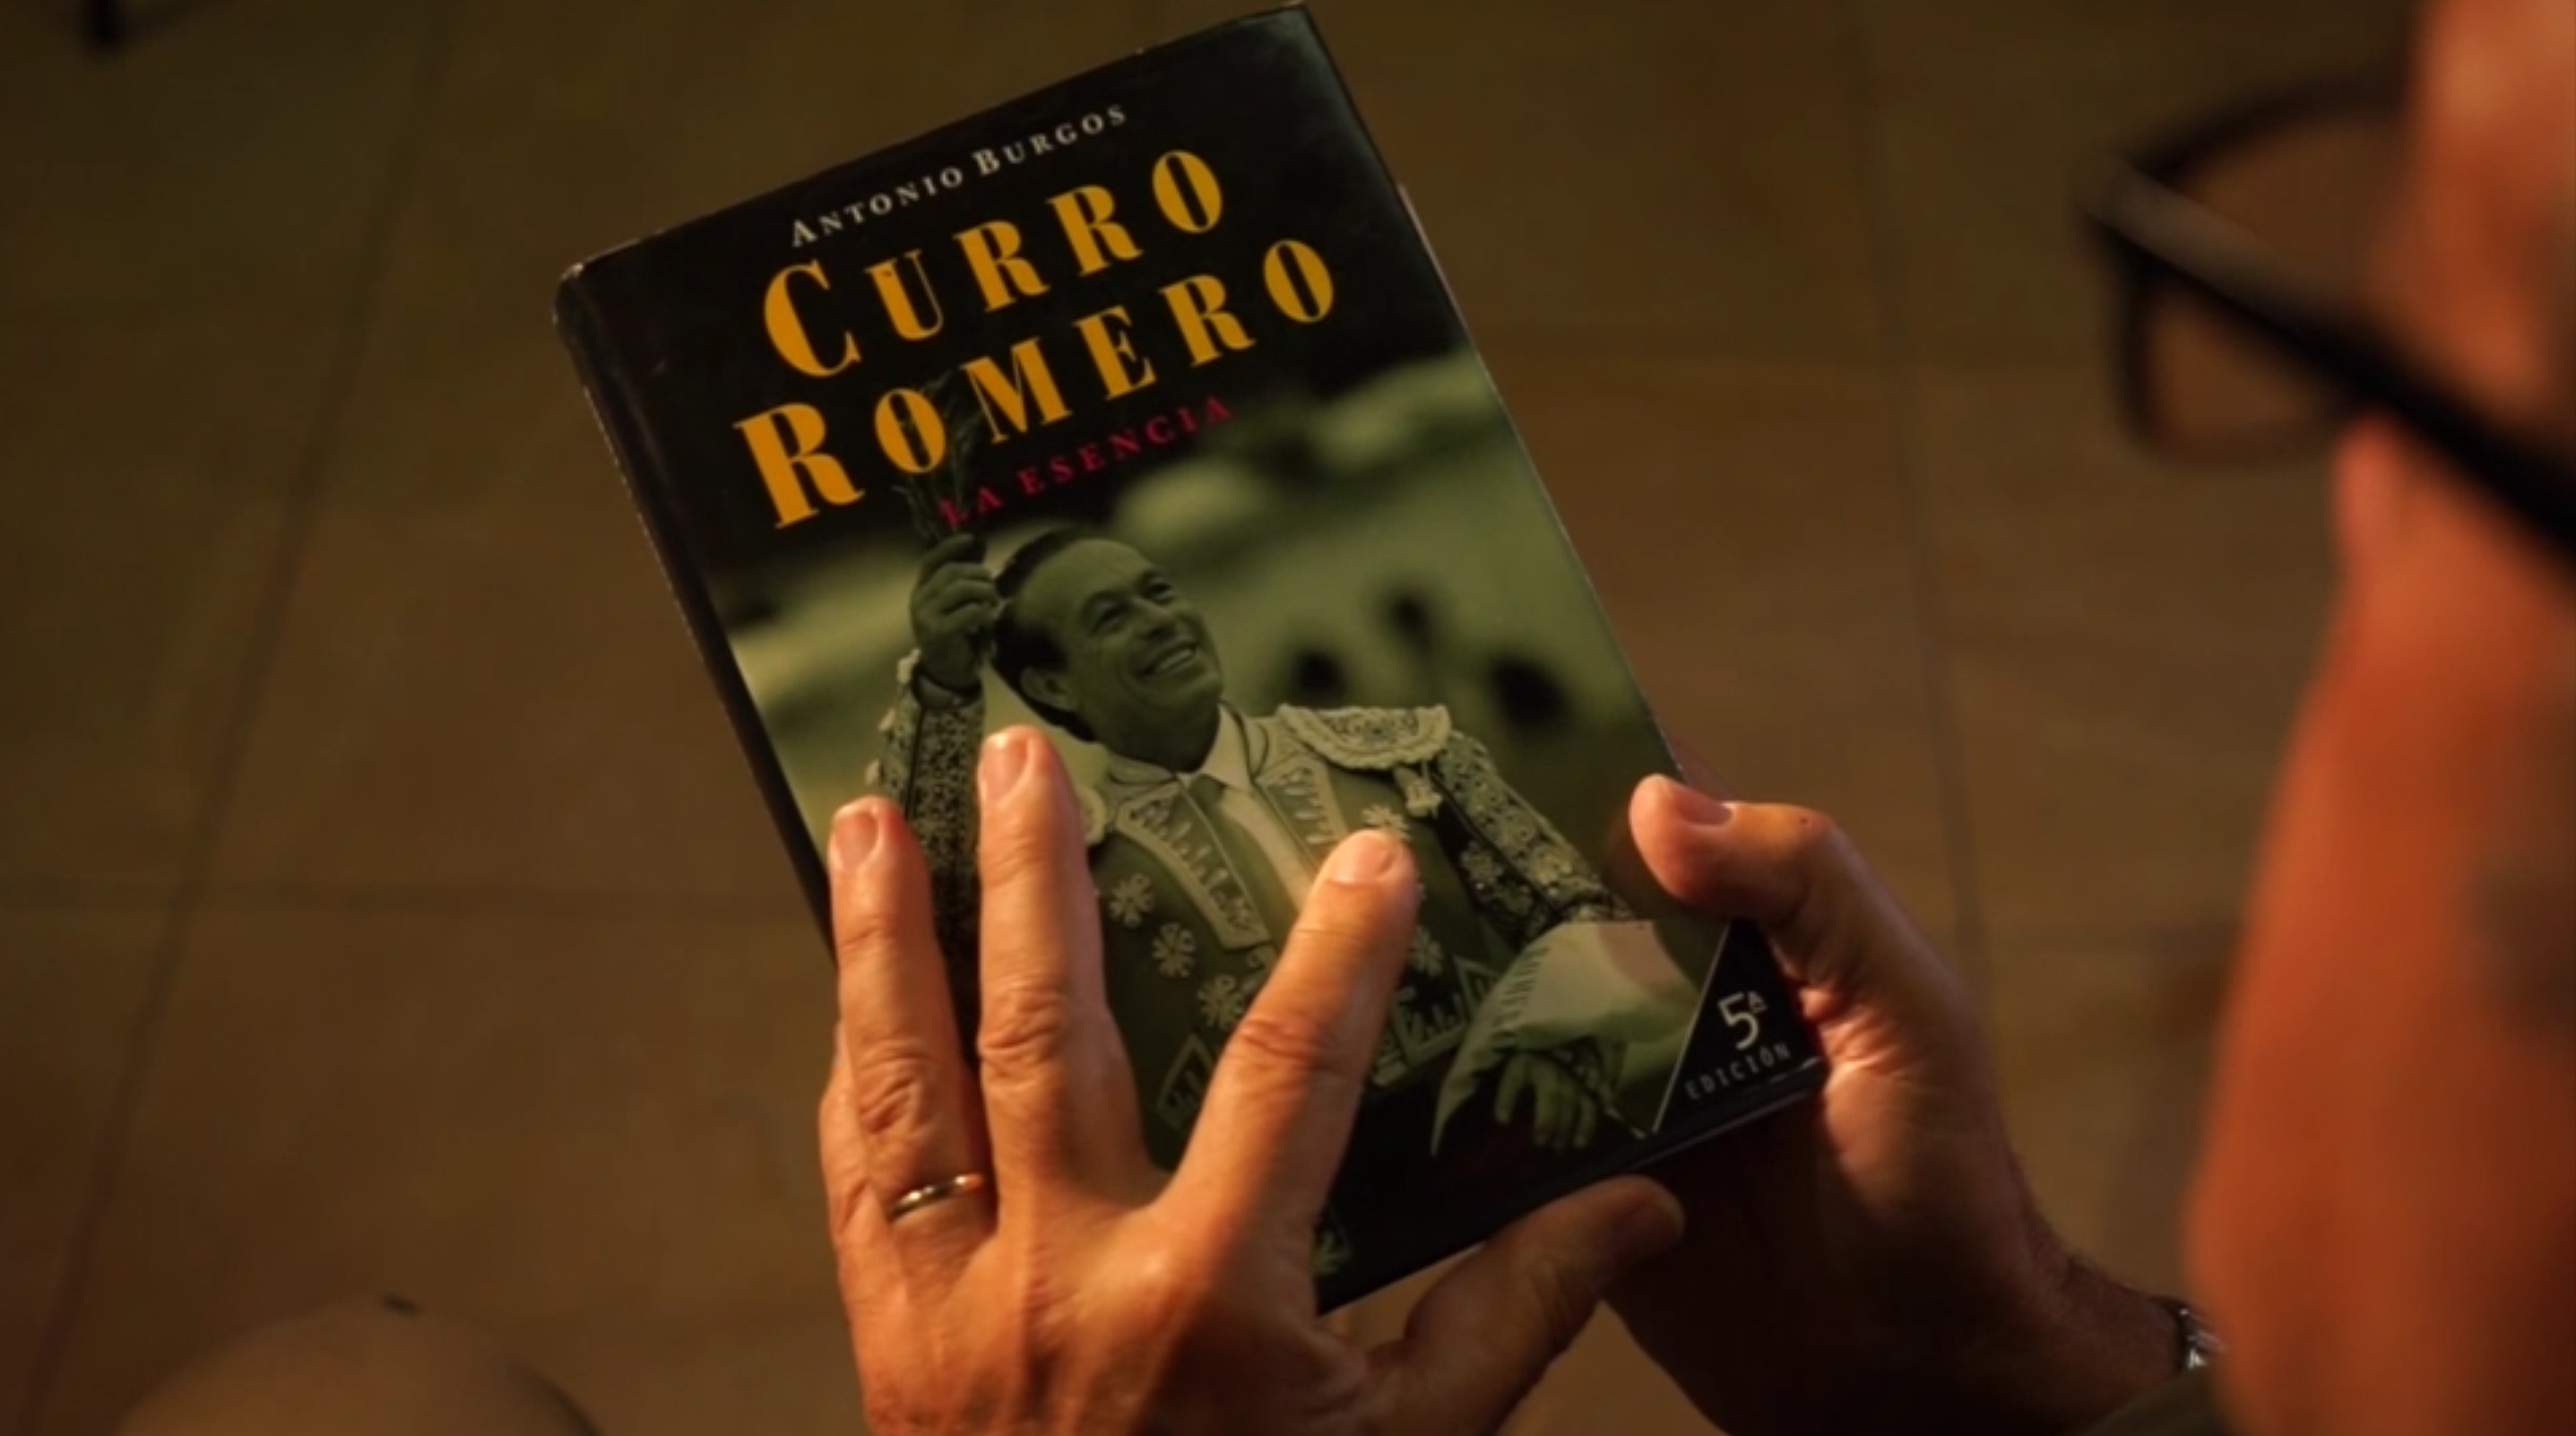 Curro Romero, un torero literario